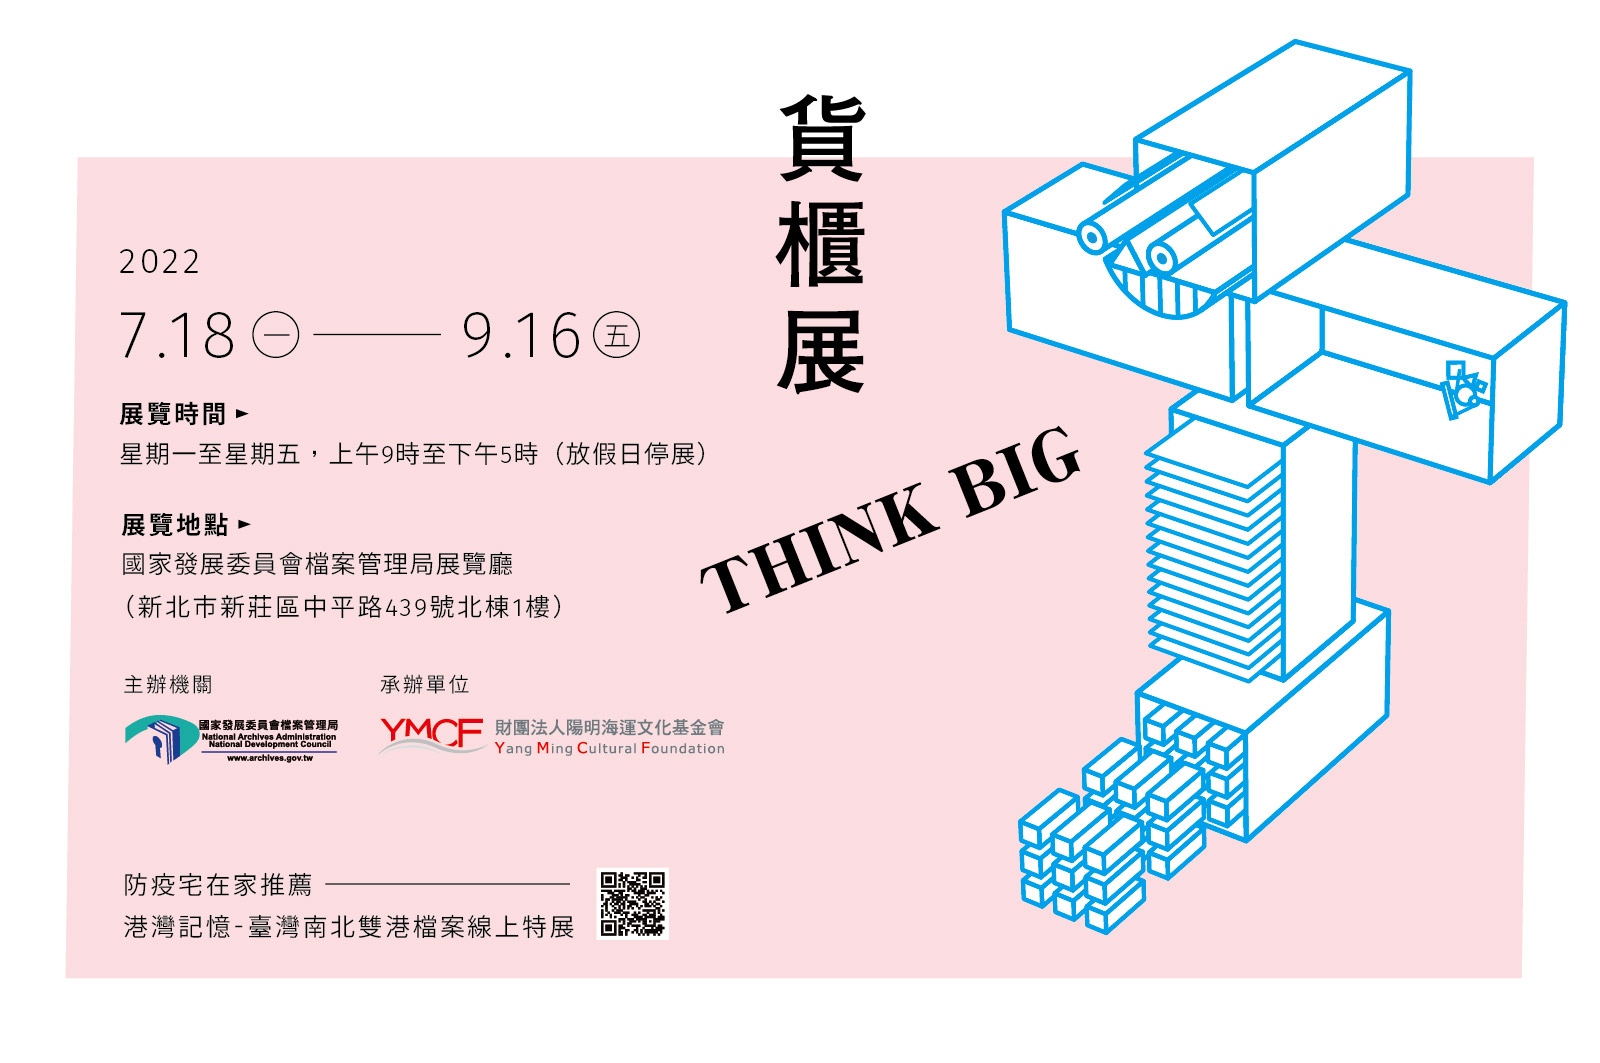 「貨櫃展 THINK BIG」主視覺宣傳圖